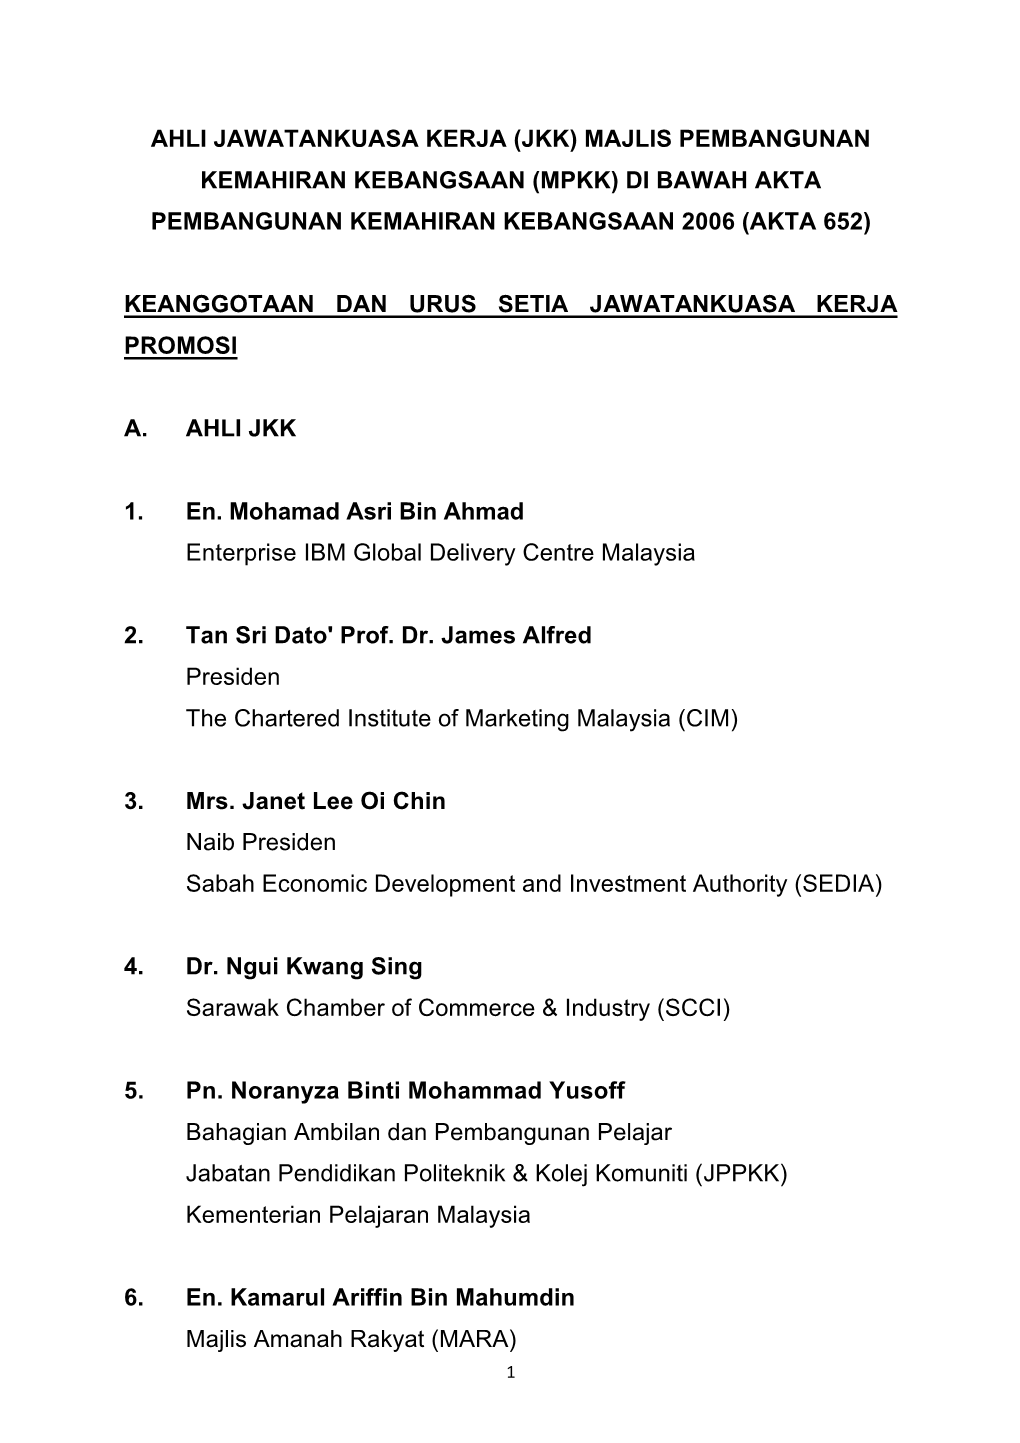 Jkk) Majlis Pembangunan Kemahiran Kebangsaan (Mpkk) Di Bawah Akta Pembangunan Kemahiran Kebangsaan 2006 (Akta 652